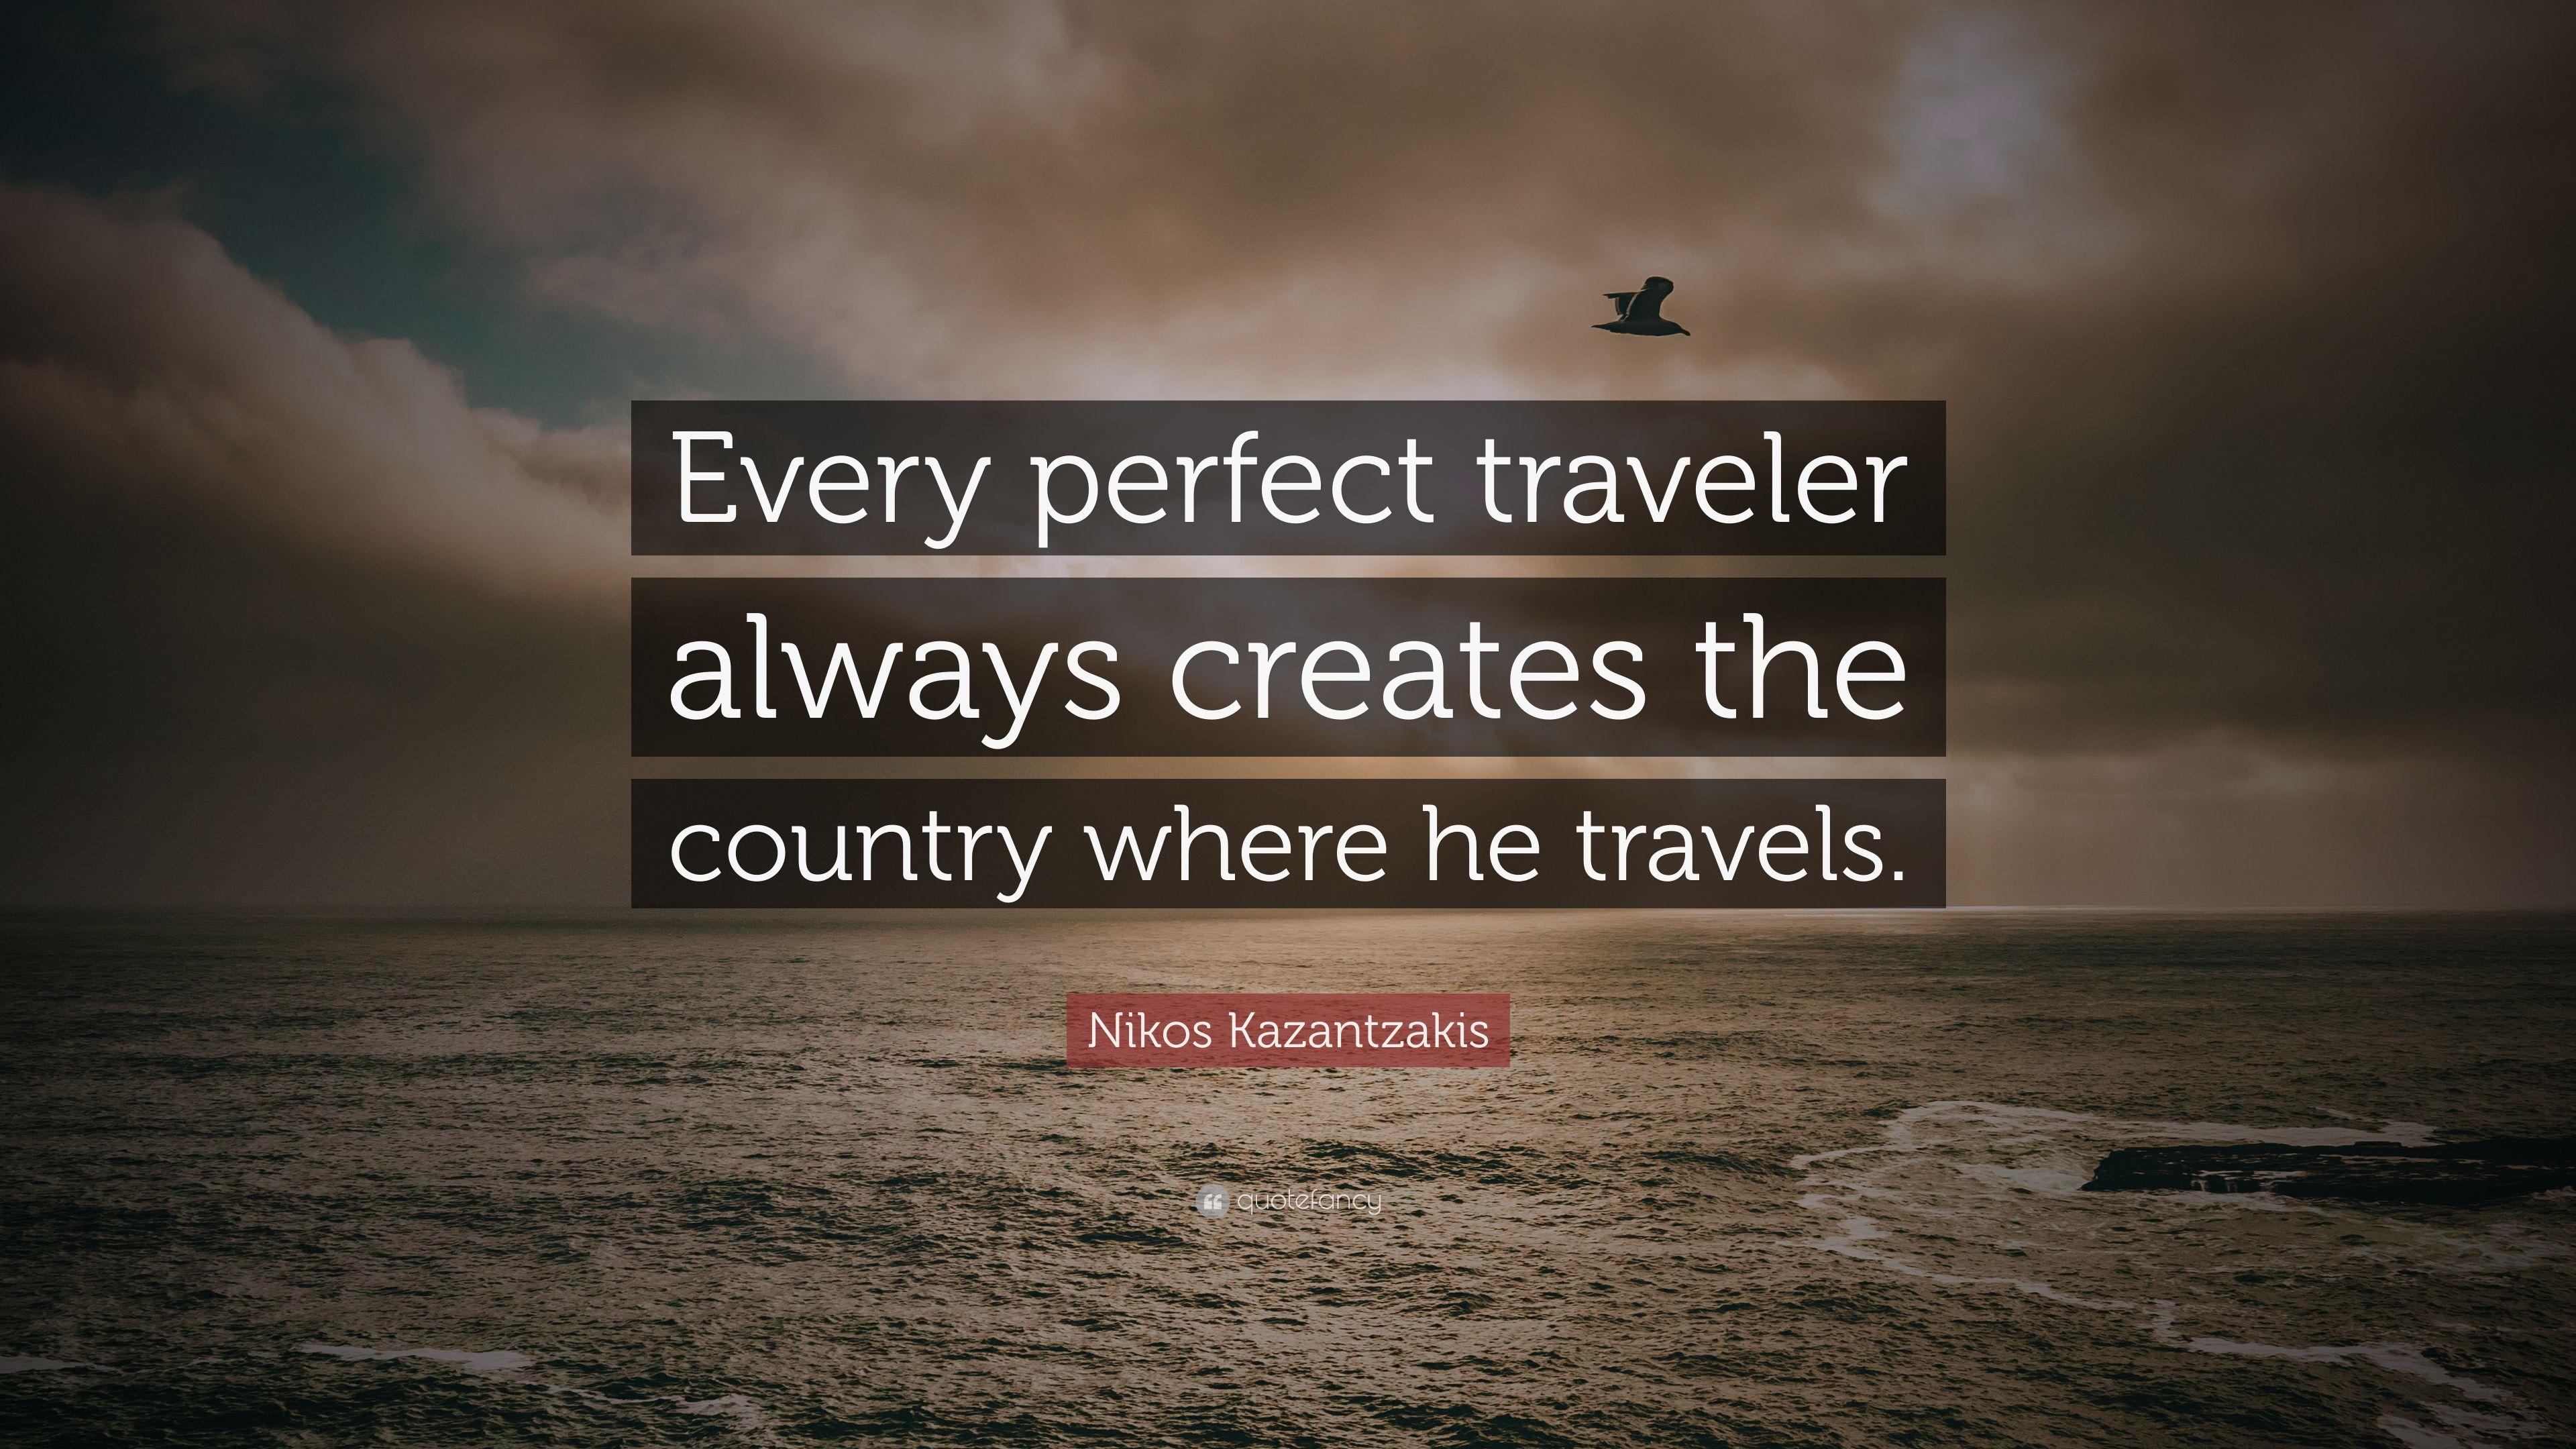 Nikos Kazantzakis Quote: “Every perfect traveler always creates